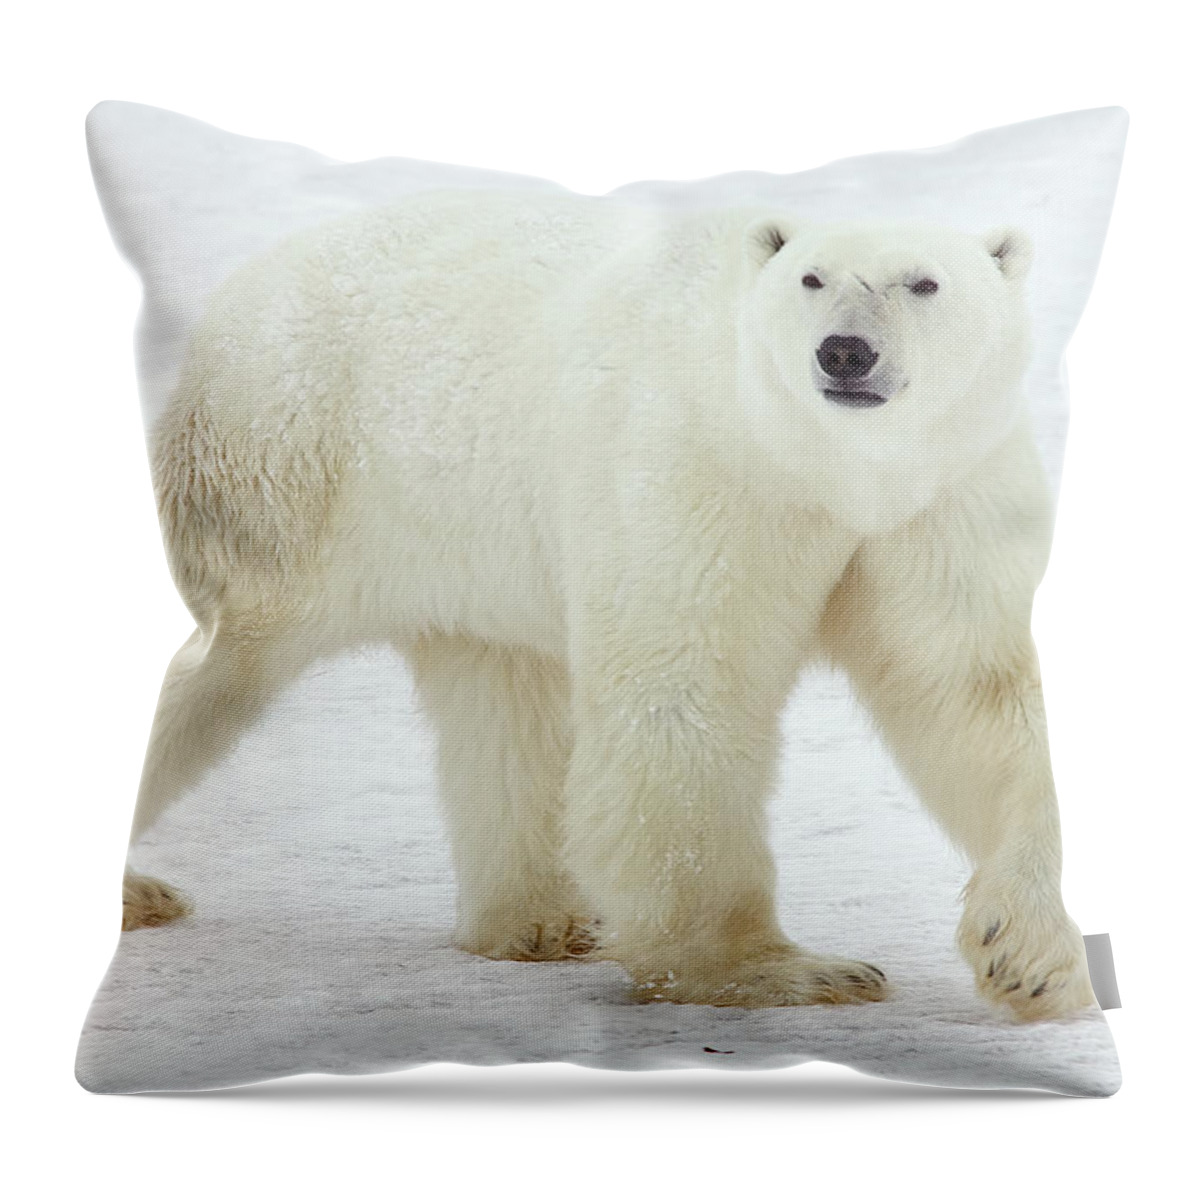 Mp Throw Pillow featuring the photograph Polar Bear Ursus Maritimus Male by Matthias Breiter